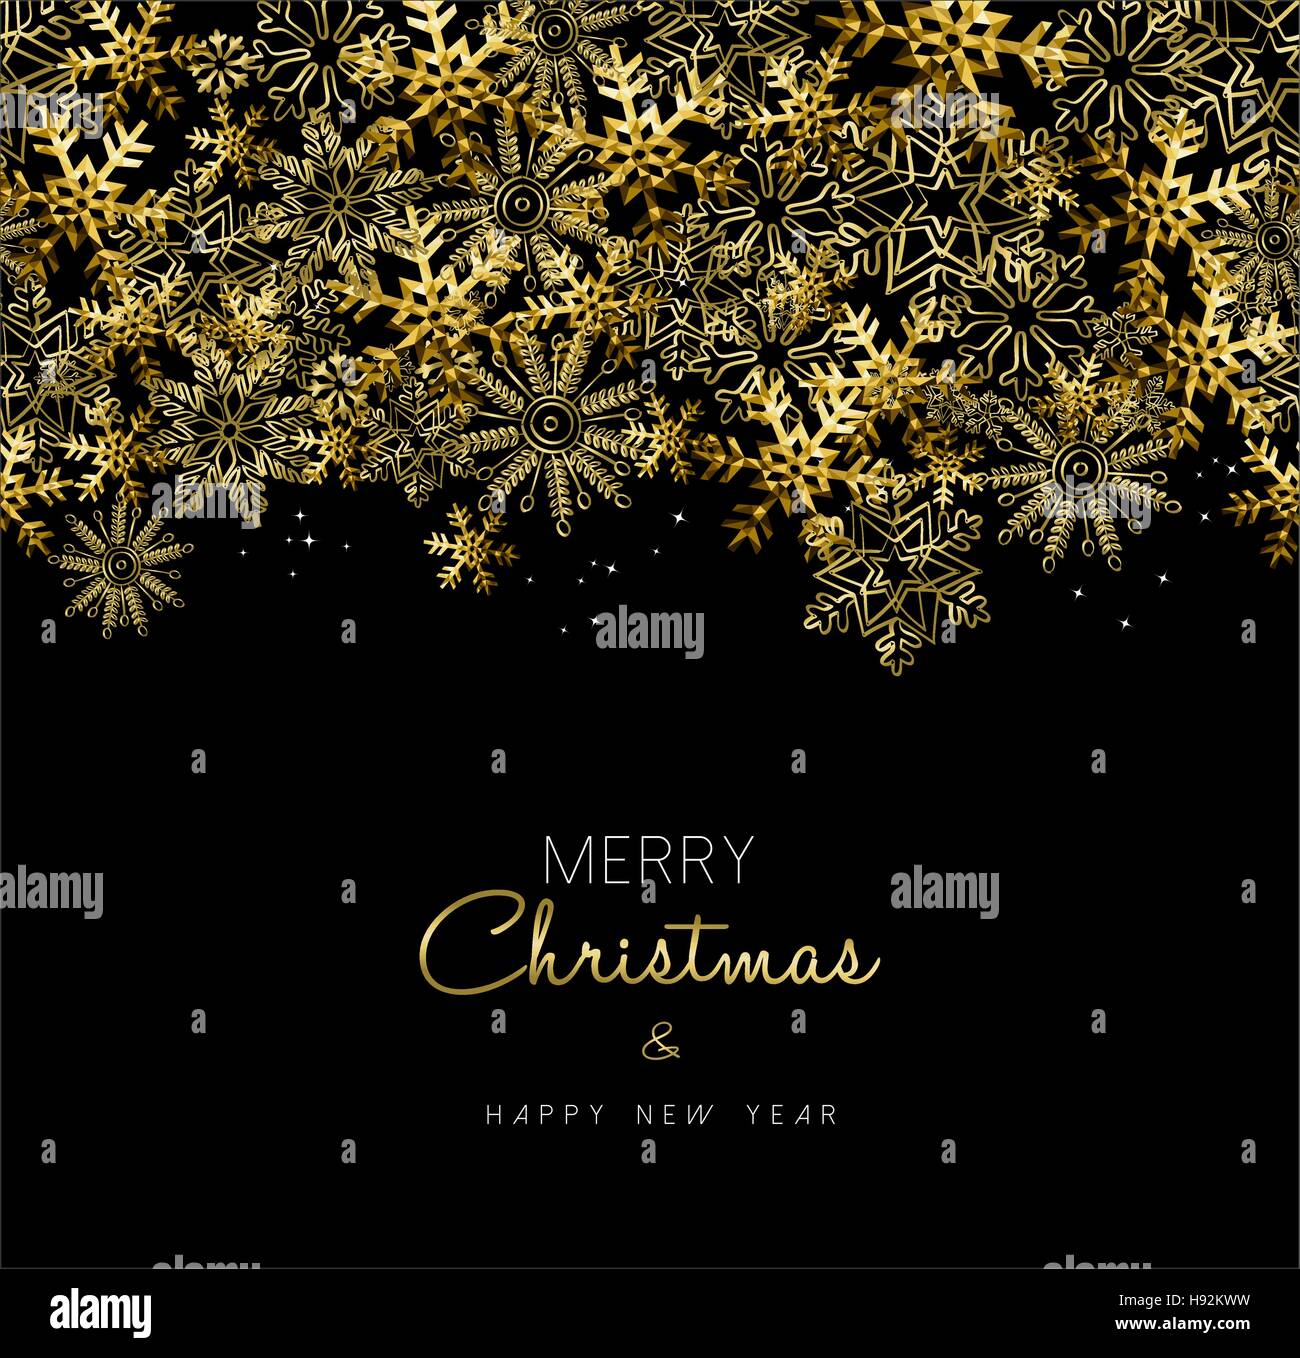 Frohe Weihnachten, frohes neues Jahr Grußkarte Design mit gold Schneeflocke Dekoration zur Weihnachtszeit. EPS10 Vektor. Stock Vektor